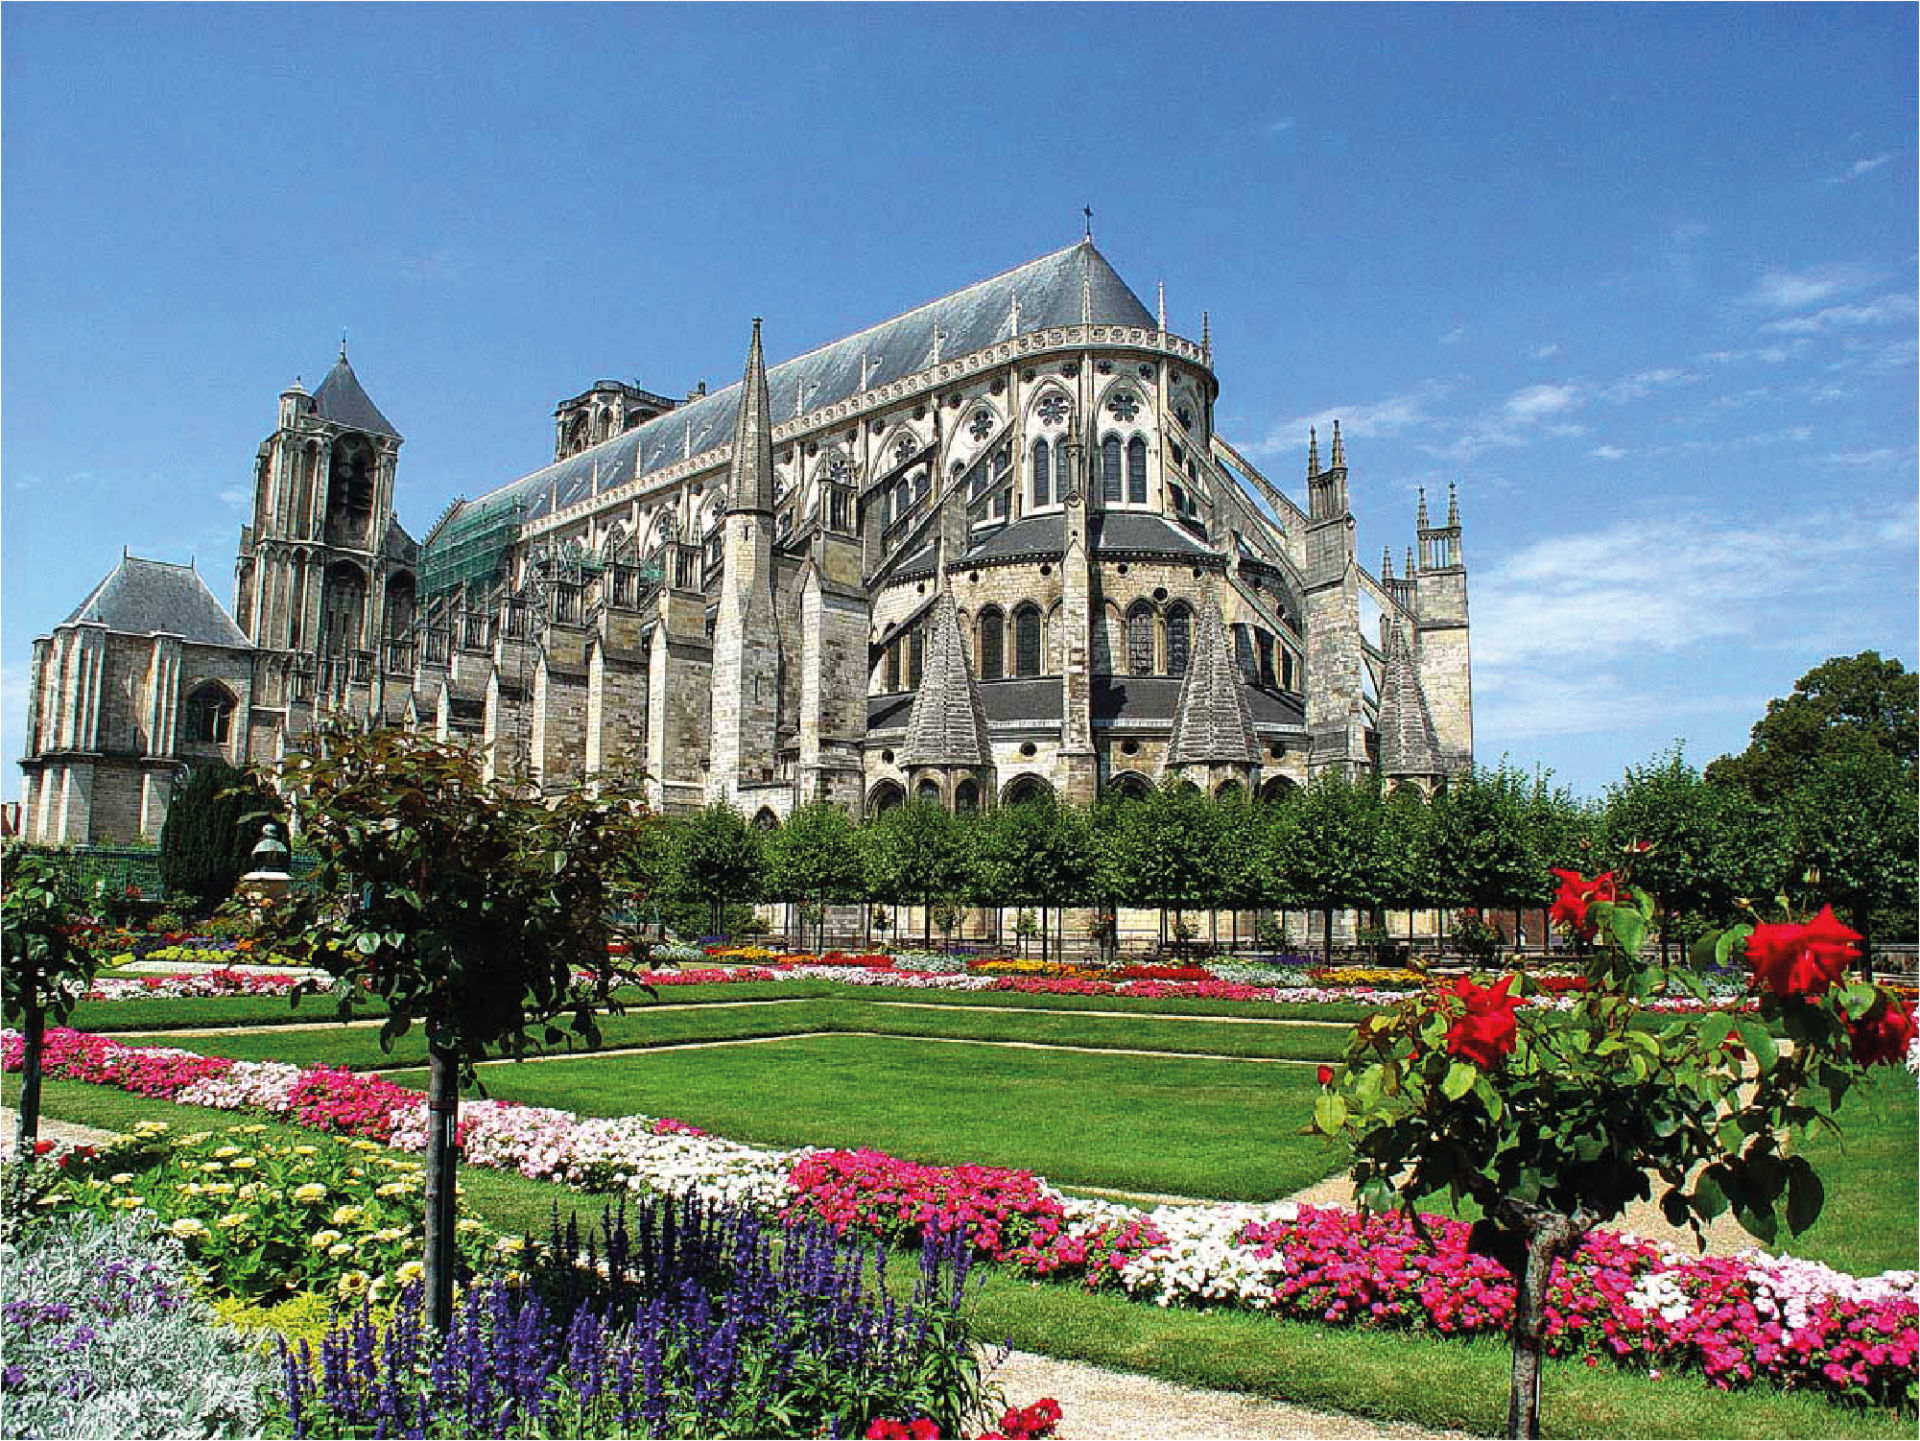 La cathédrale Saint-Etienne